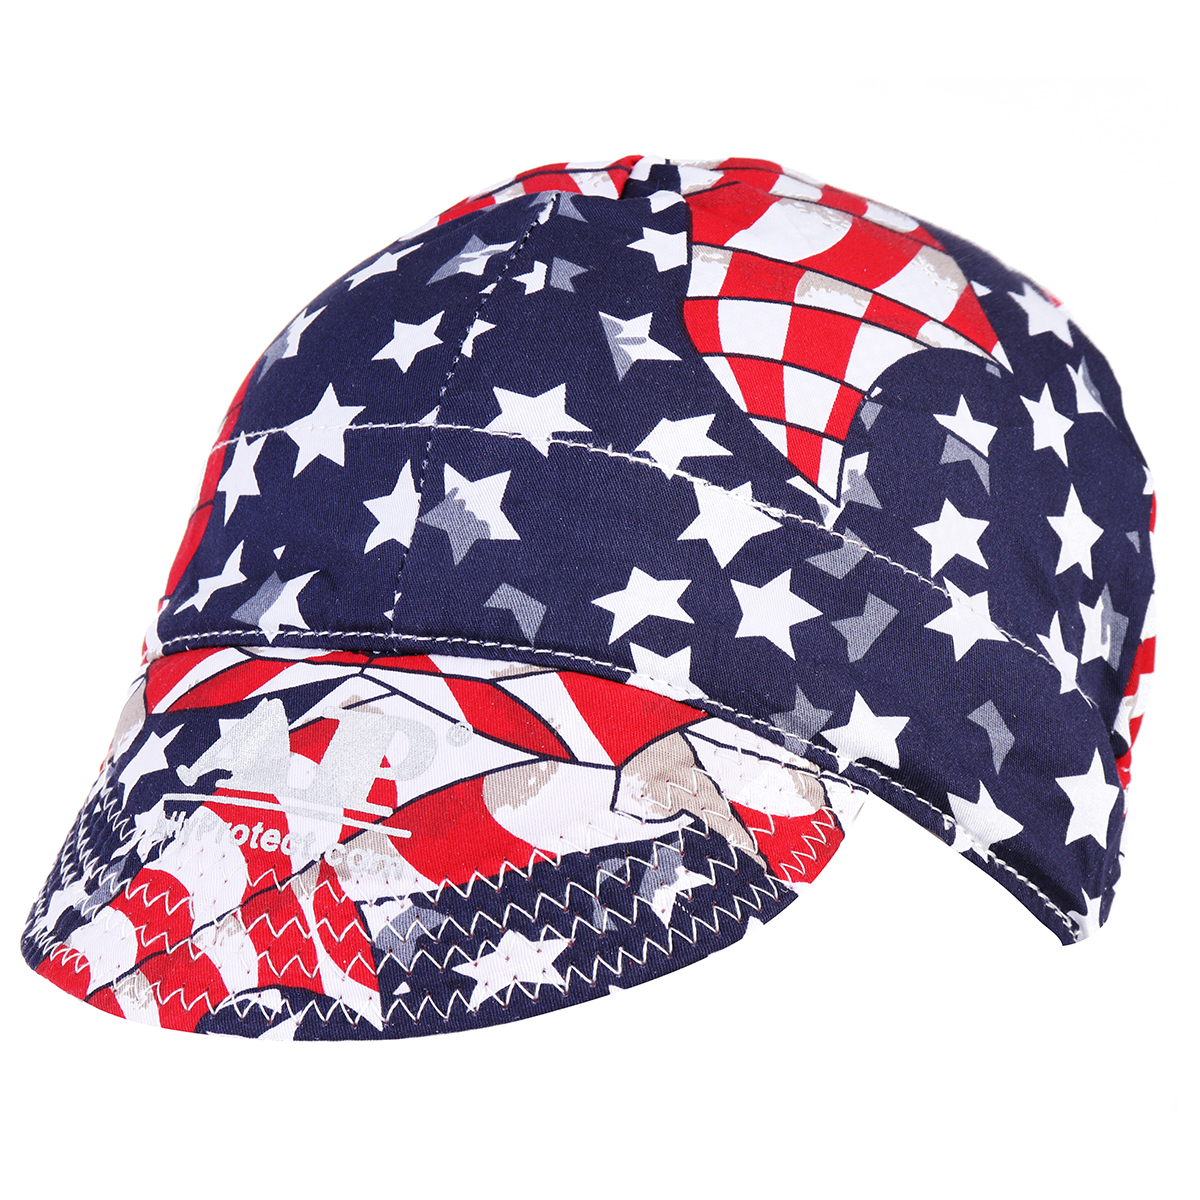 Welding-Cap-Protective-Cotton-Hat-Cap-Welding-Helmet-Hood-Tool-Sweat-Absorption-1321885-4